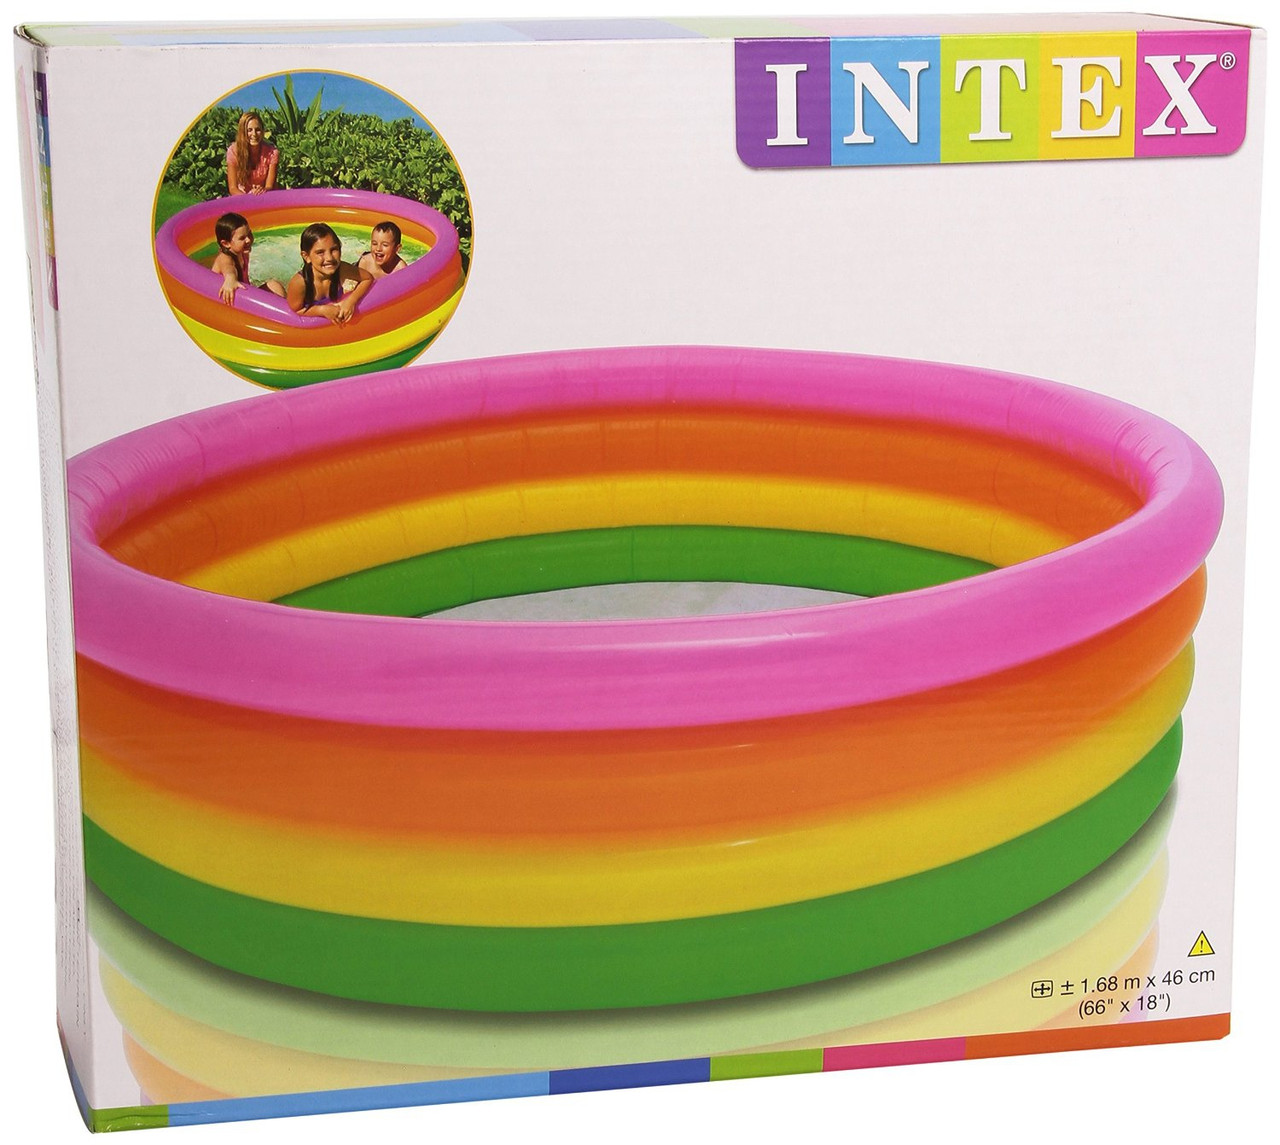 Детский надувной бассейн INTEX 56441 Радуга, 168x46, интекс, 4 кольца